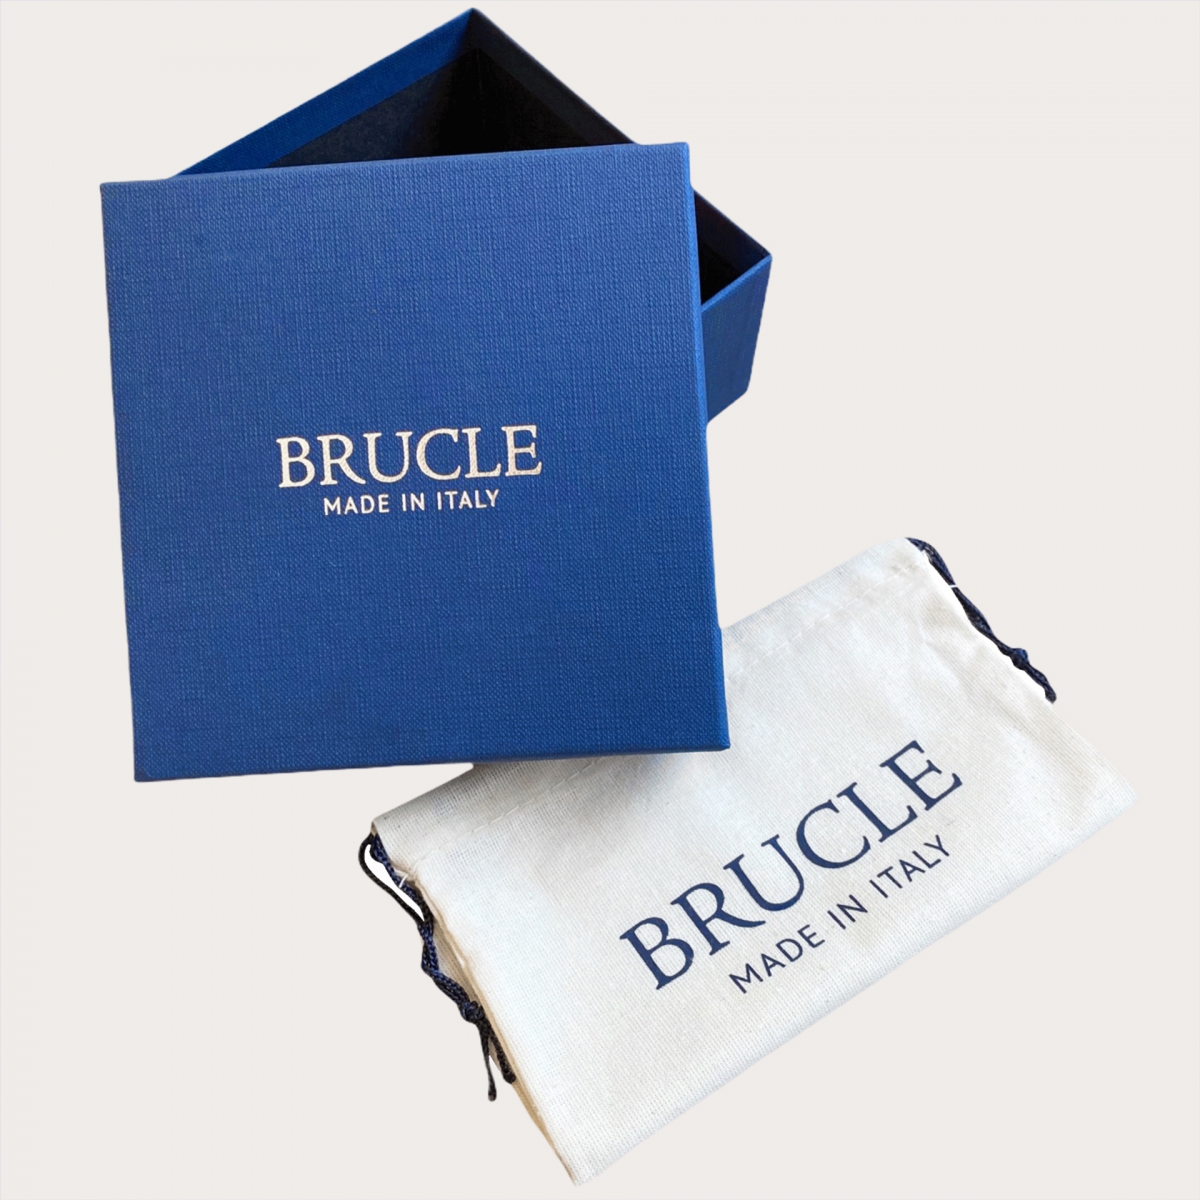 BRUCLE Cinturón plano de piel de becerro, azul marino